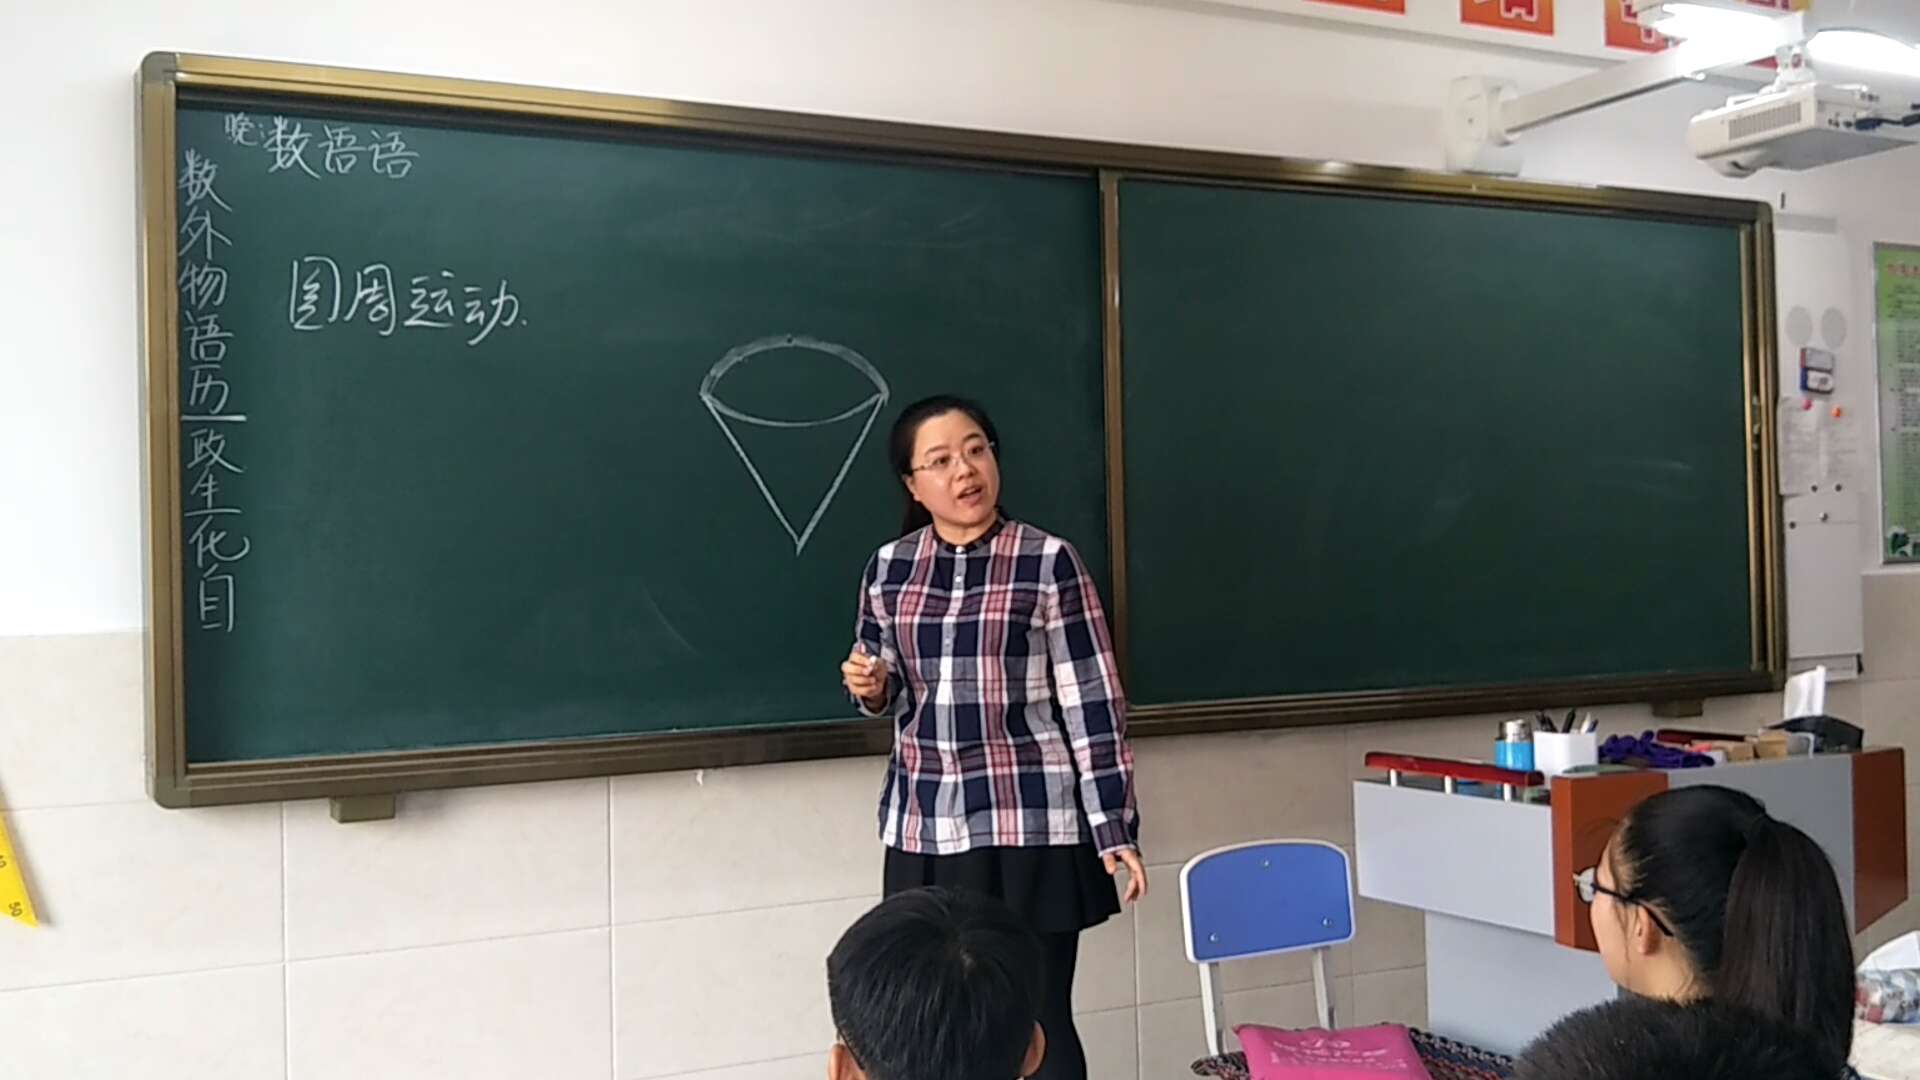 哈尔滨市双城区兆麟中学教师张敏 "开挂"式提问 学生